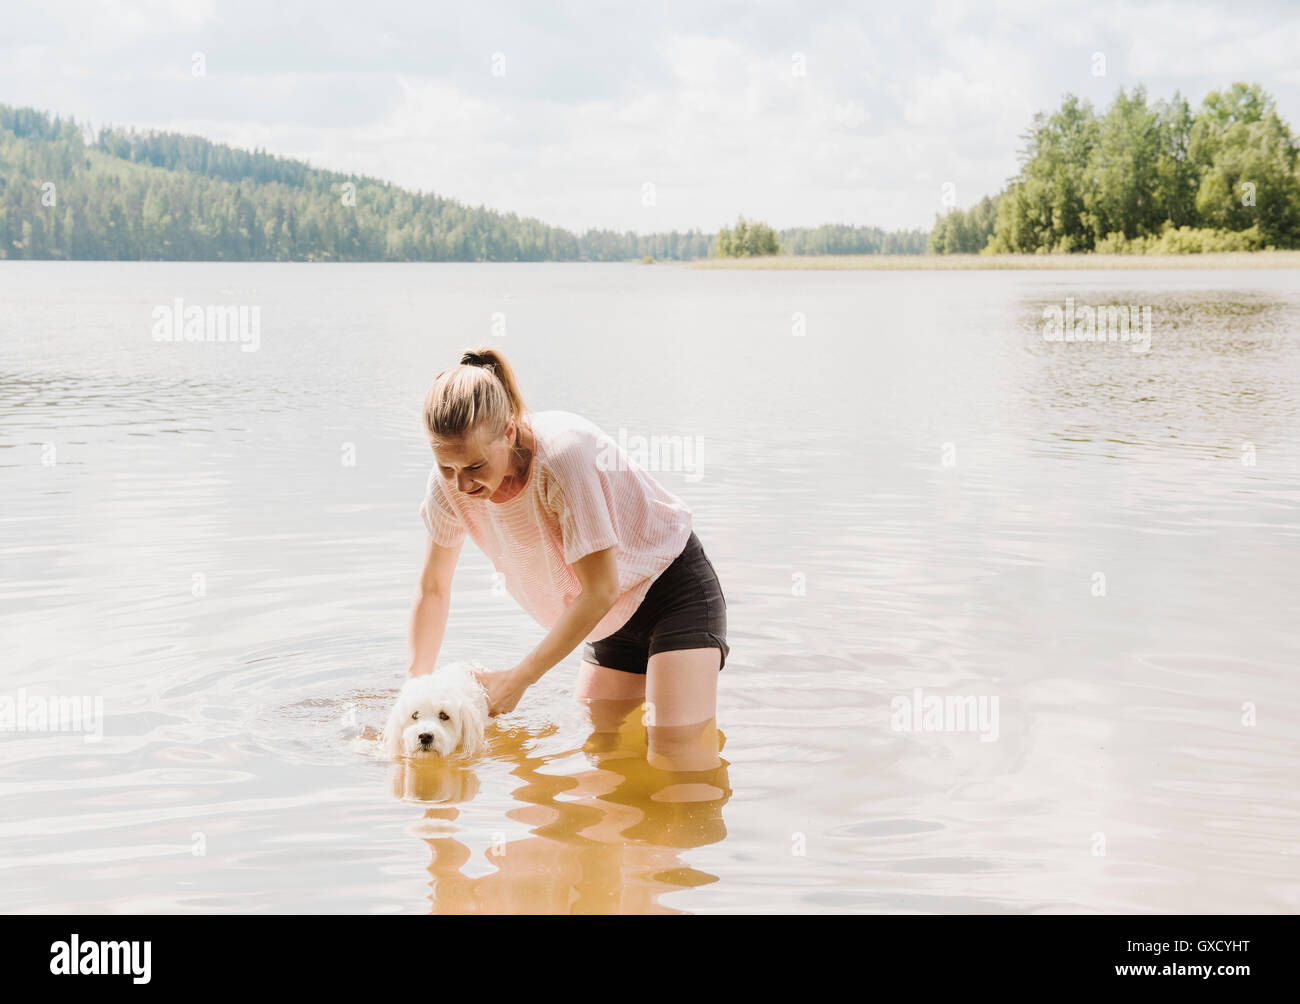 Formation femme Coton de Tuléar chien à nager dans le lac, Orivesi, Finlande Banque D'Images